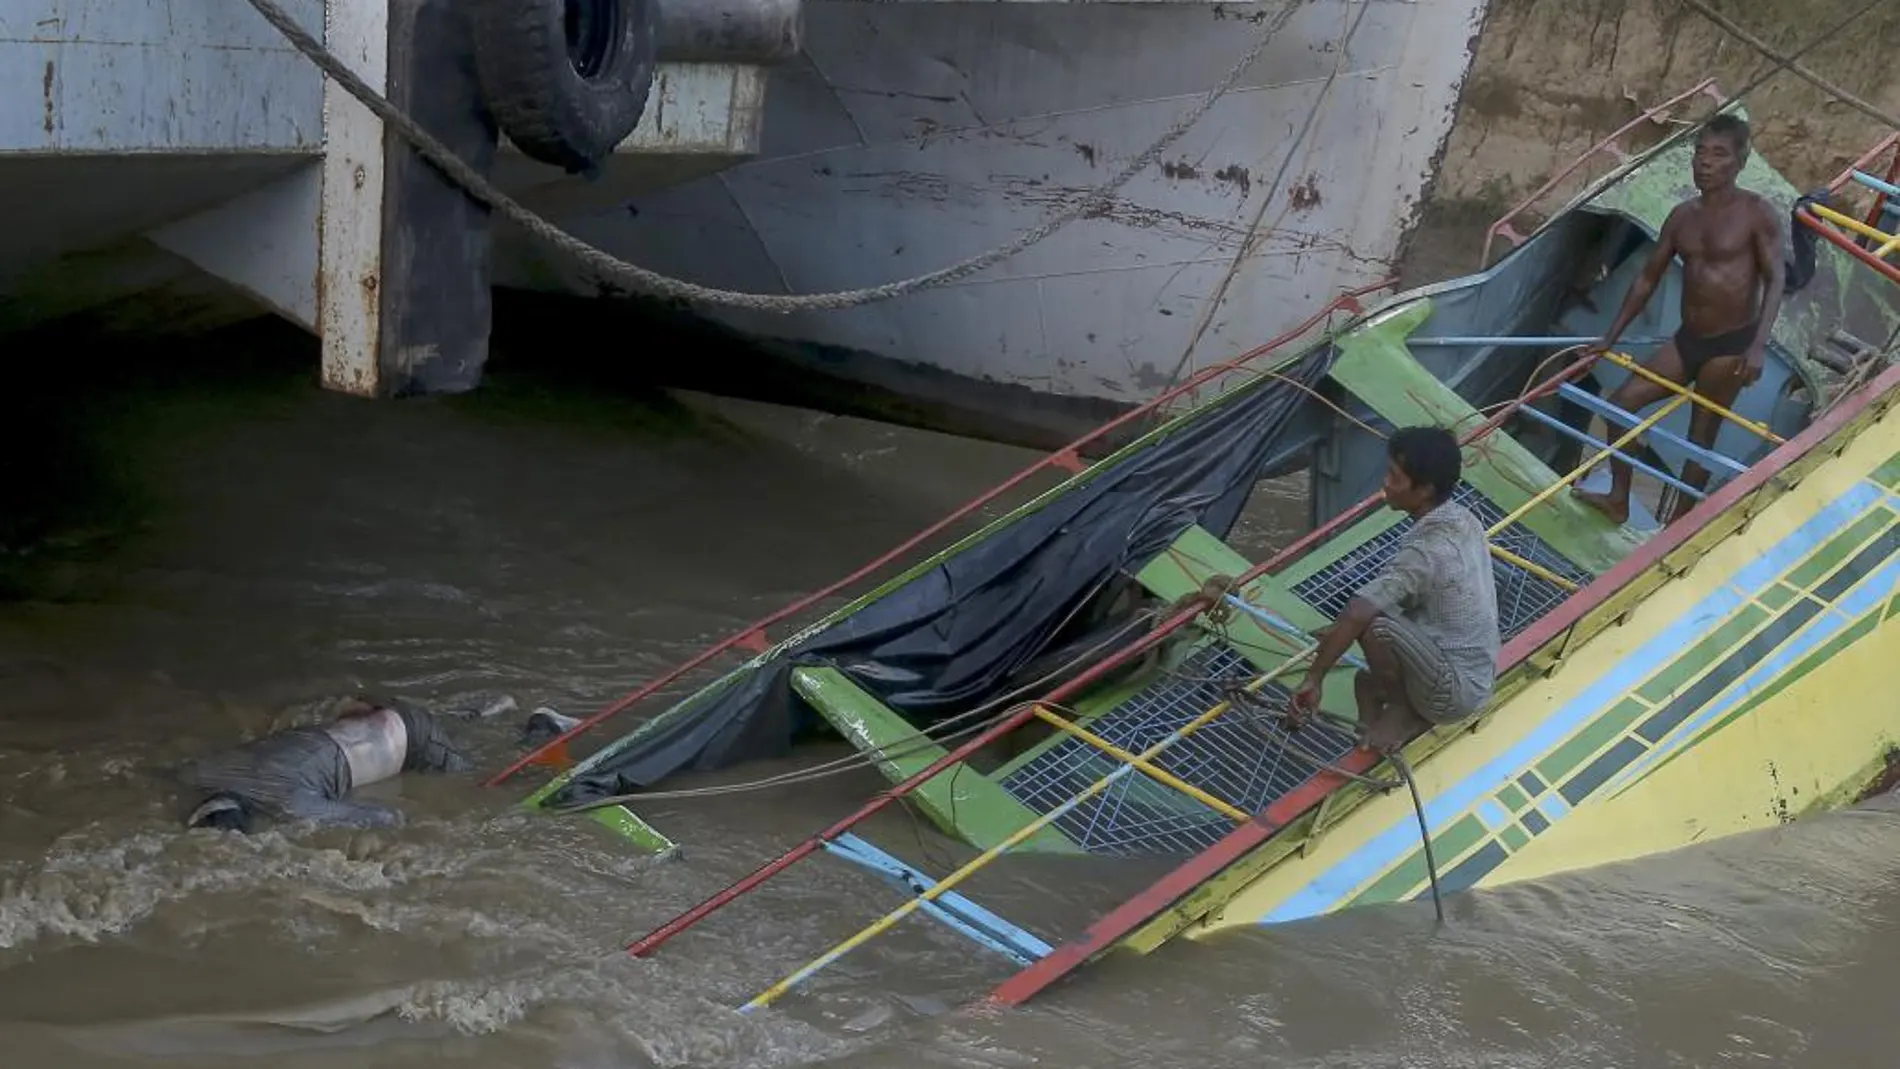 Miembros de los servicios de rescate abordan un barco de pasajeros hundido en el río Chindwin